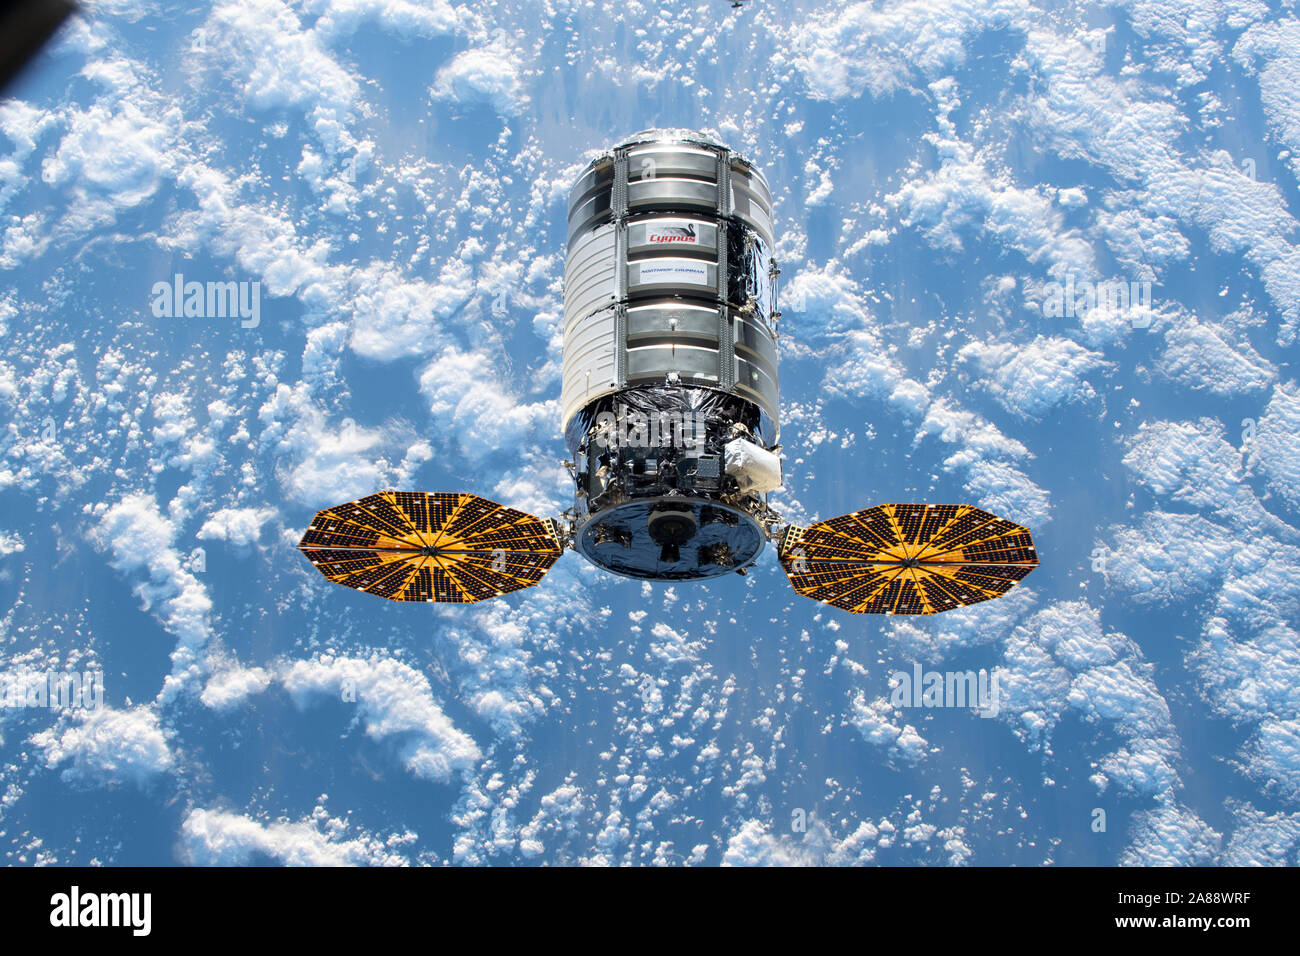 La Northrop Grumman Cygnus space freighter approcci al dock presso la Stazione Spaziale Internazionale Novembre 4, 2019 in orbita intorno alla terra. Questa è la dodicesima commerciale nave rifornimento da Northrop Grumman per consegnare cargo verso la stazione spaziale internazionale. Foto Stock